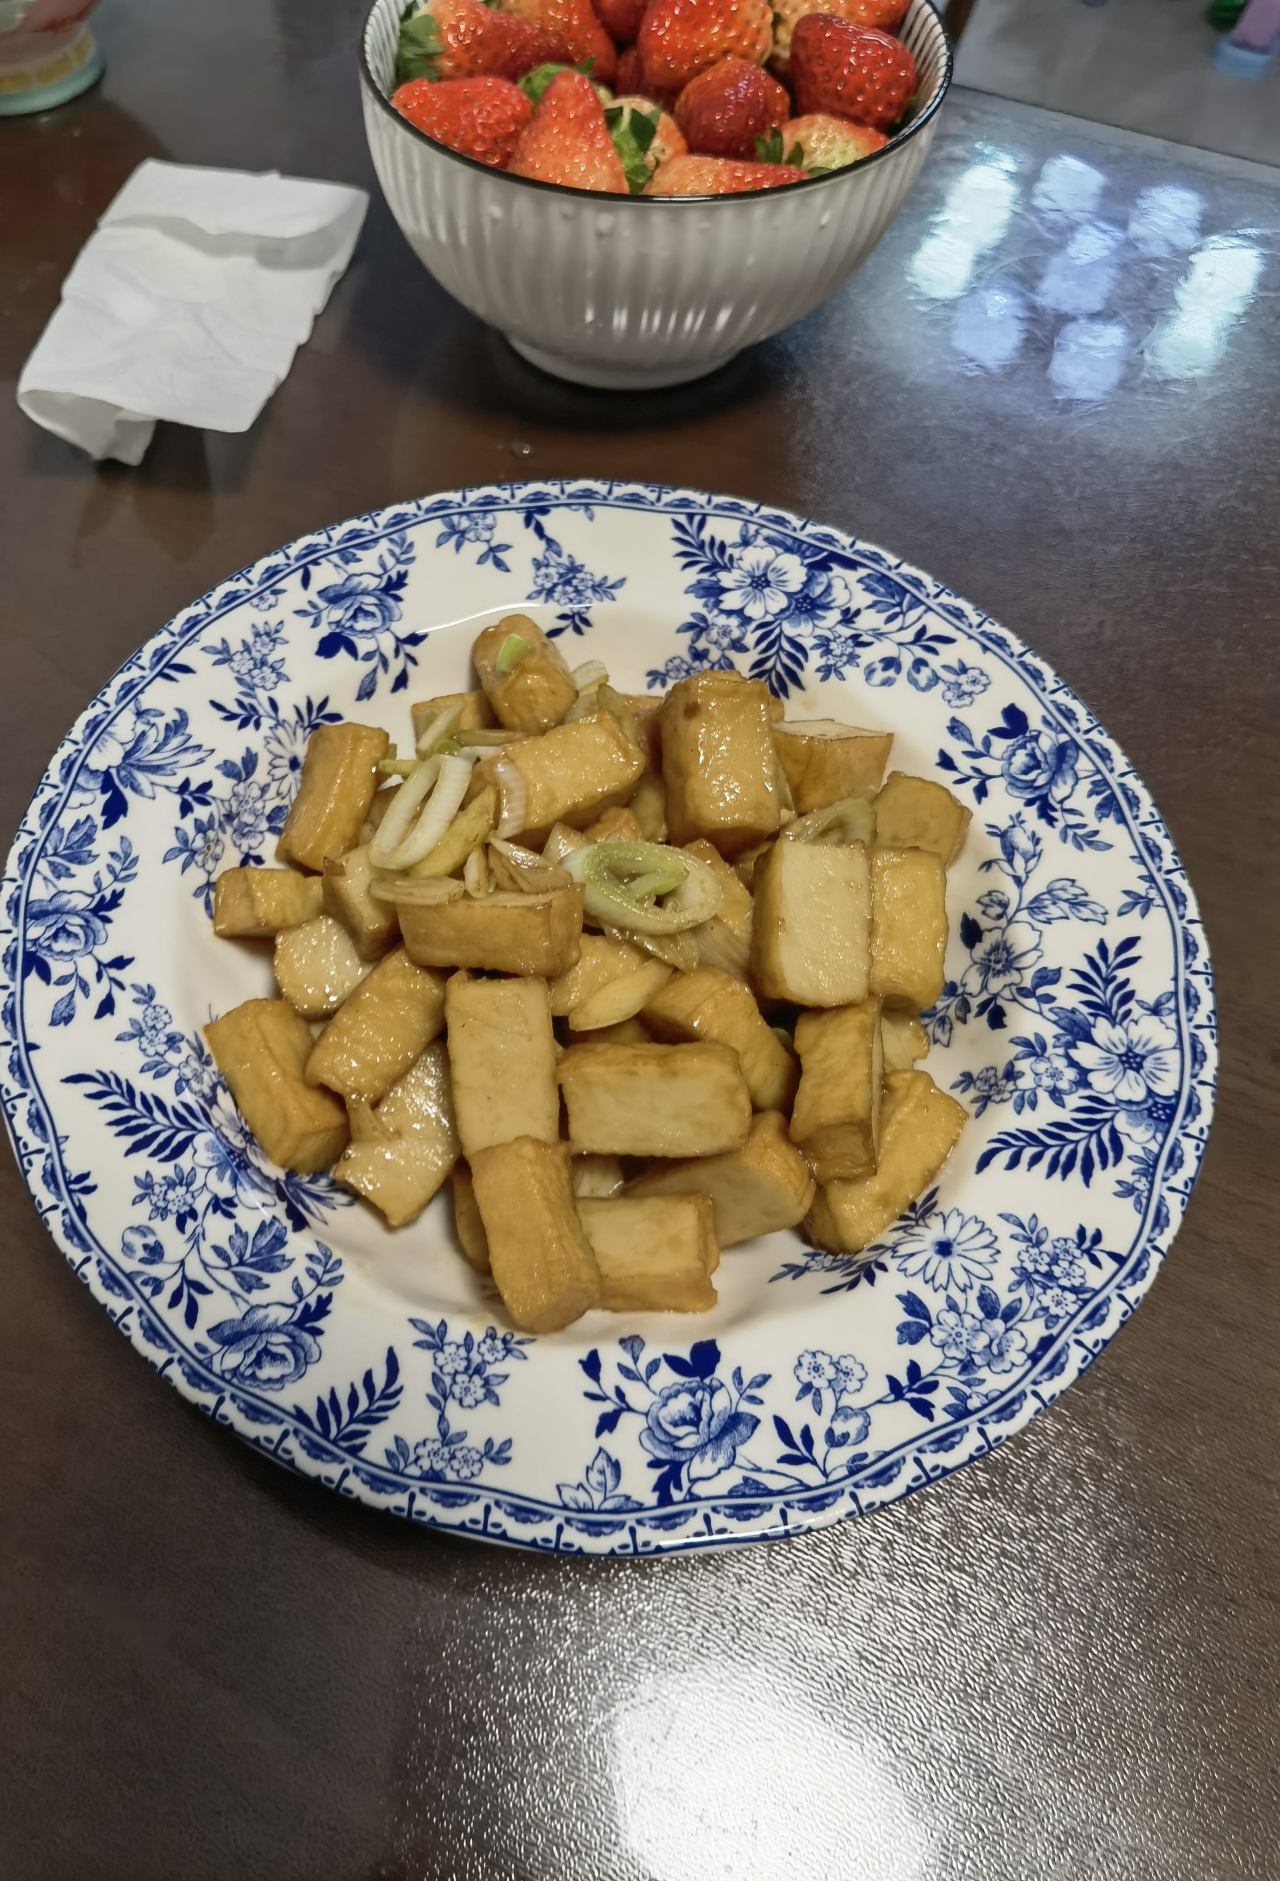 葱烧鱼豆腐